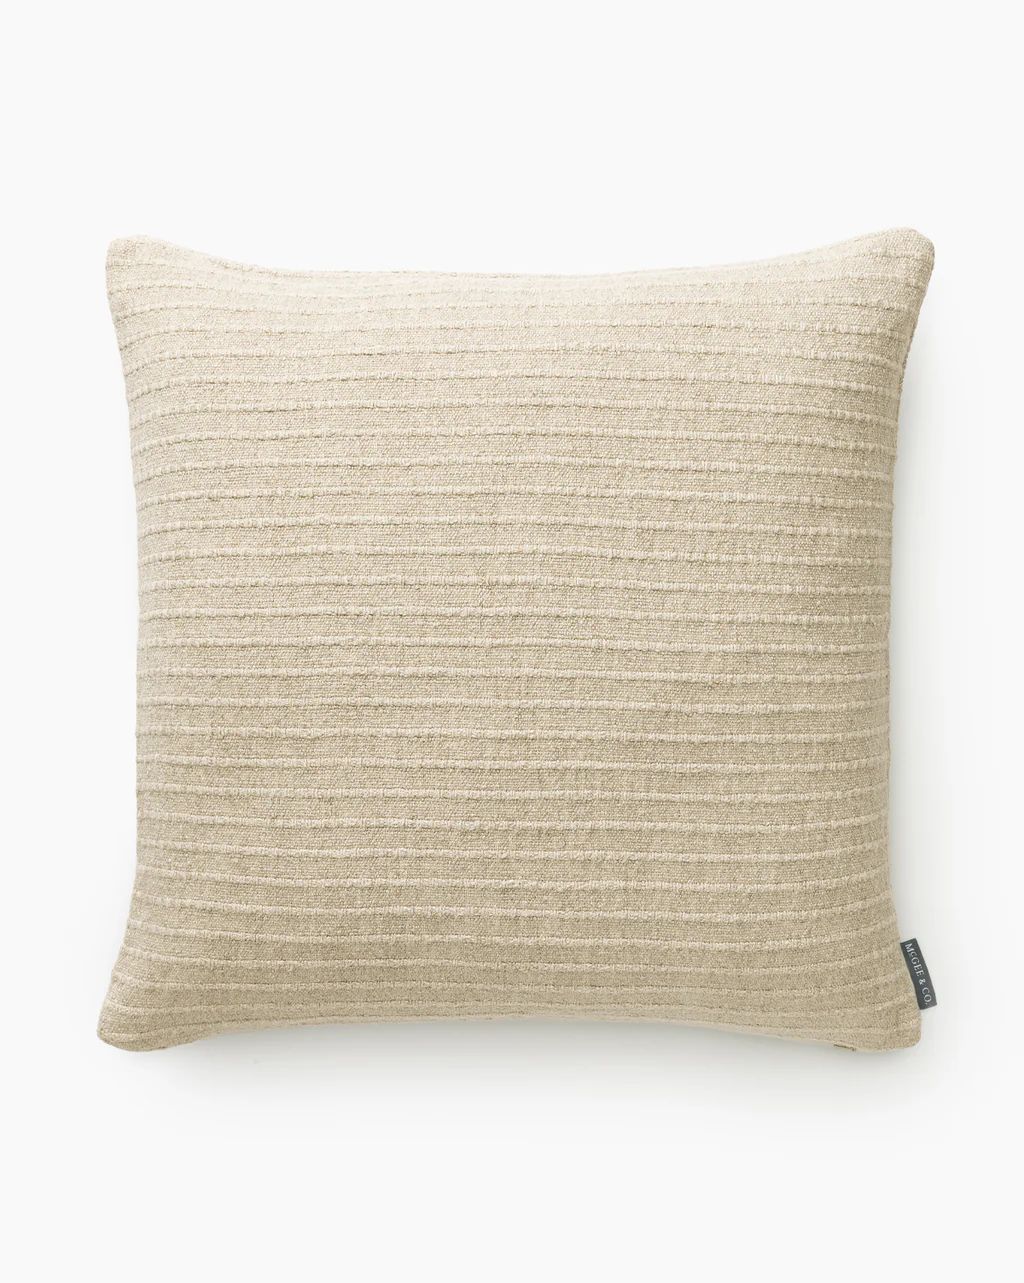 Eaton Pillow Cover | McGee & Co.